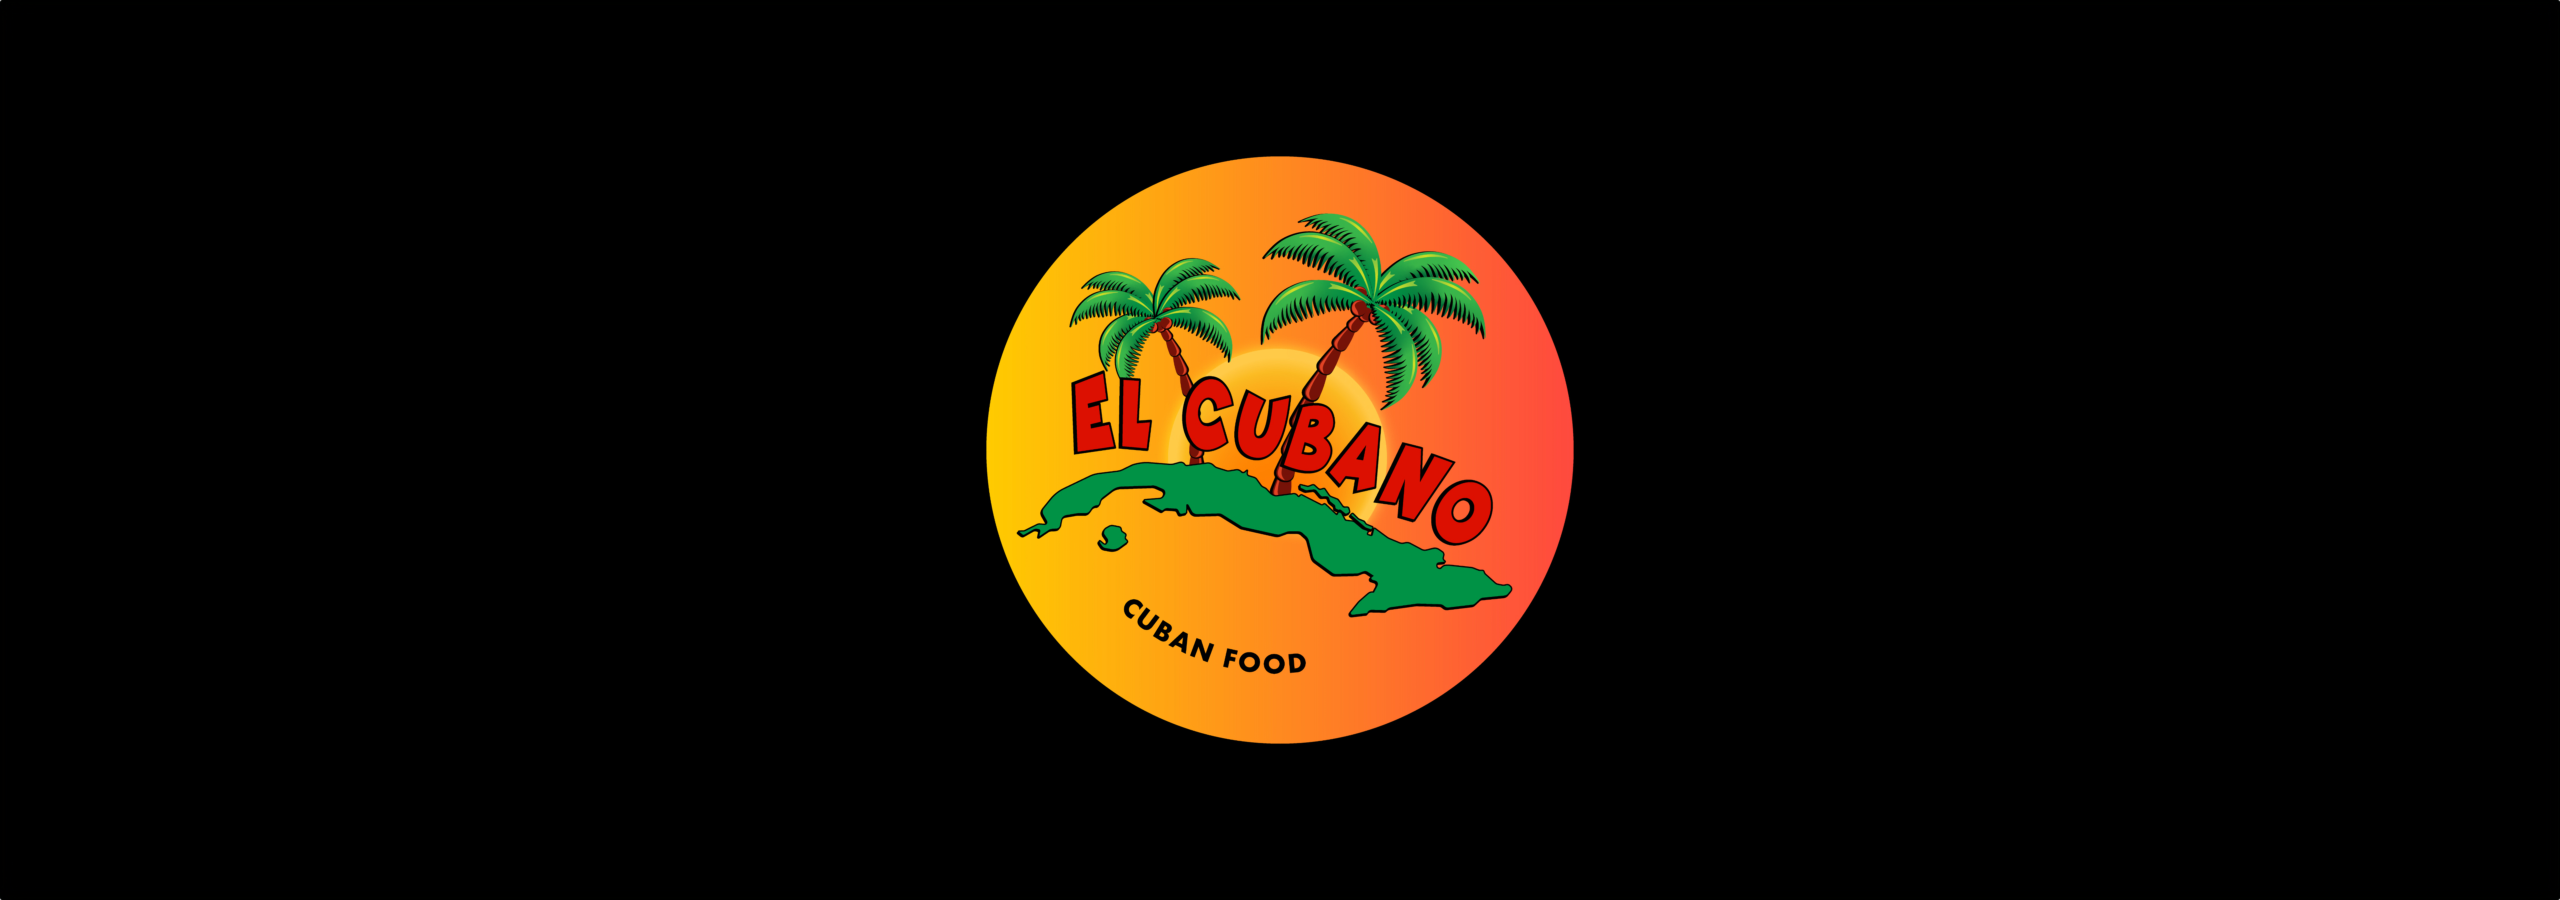 El Cubano Restaurant